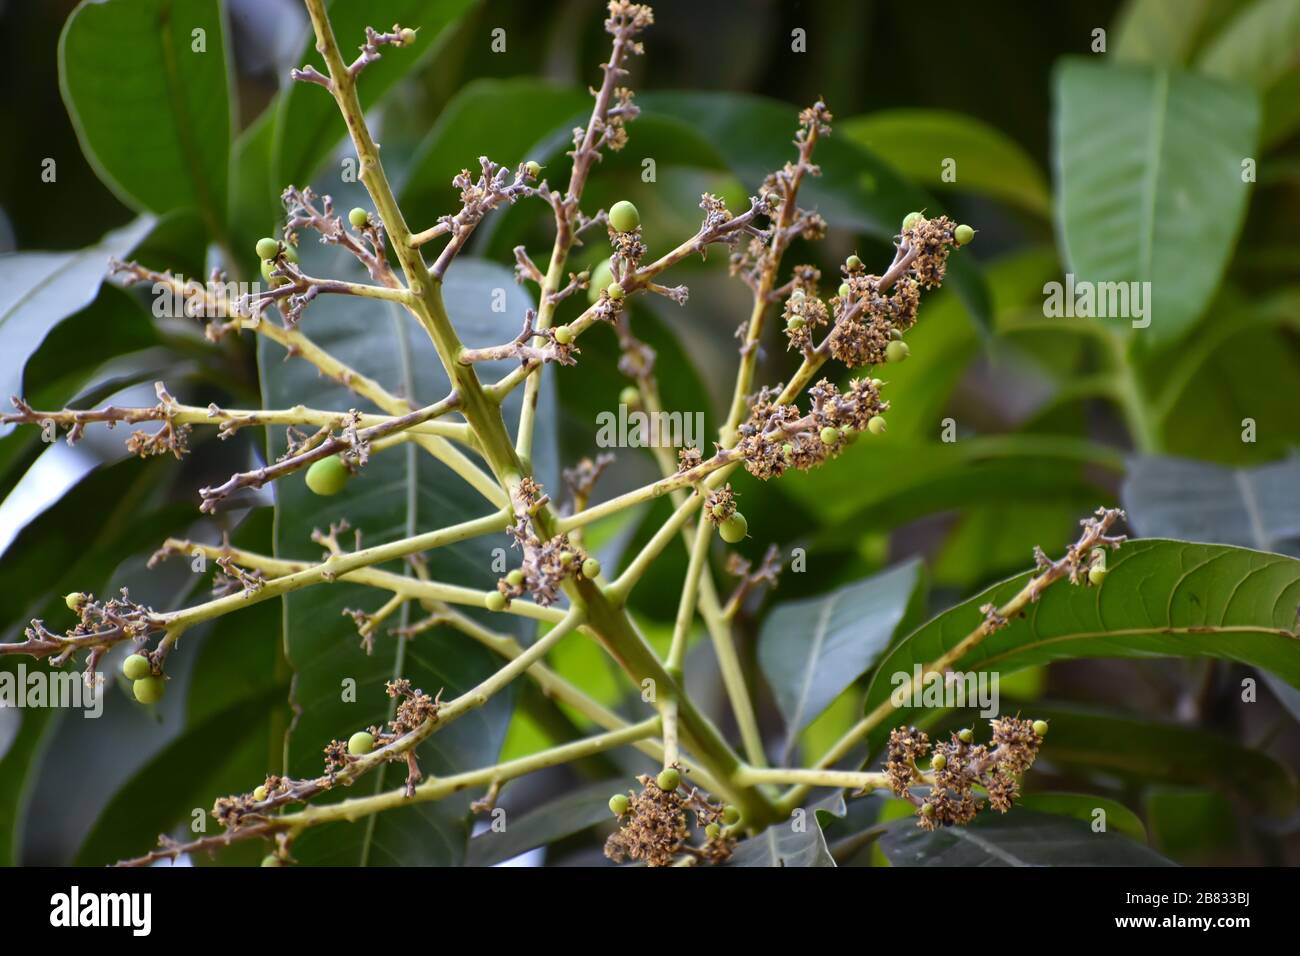 Flores y brotes de Mangifera indica, comúnmente conocido como mango con hojas verdes Foto de stock